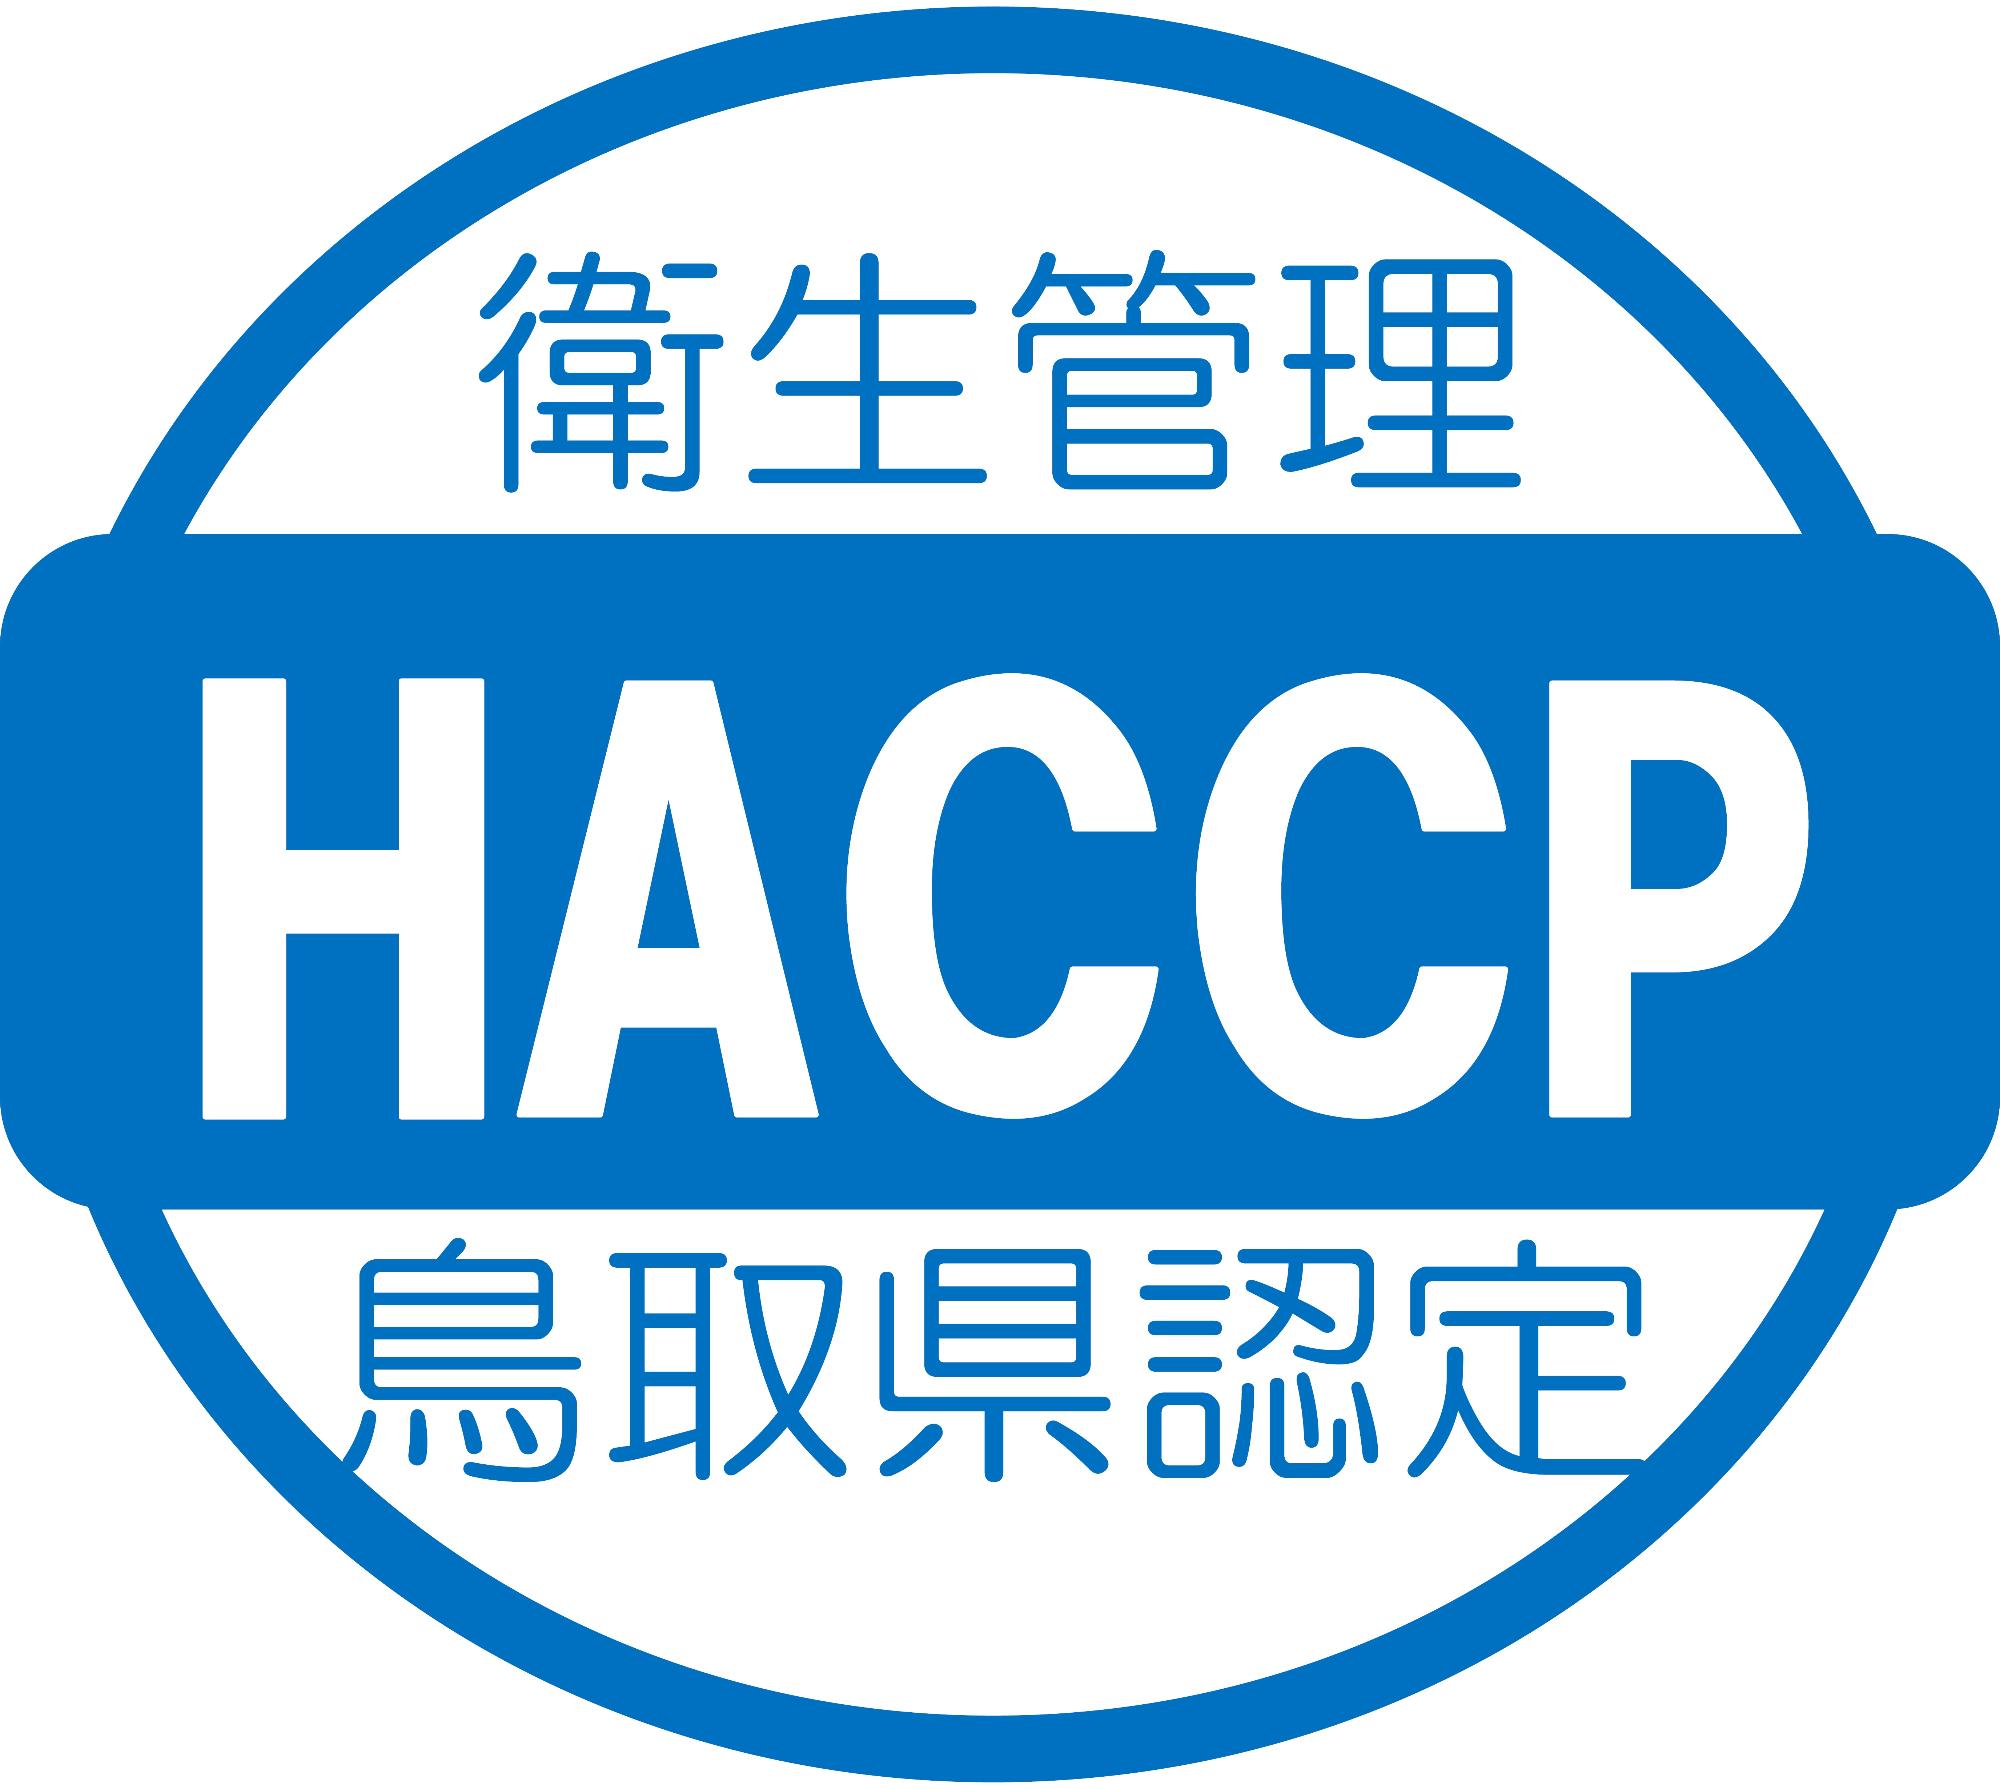 「衛生管理 HACCP 鳥取県認定」と書かれたHACCP認証マークの画像